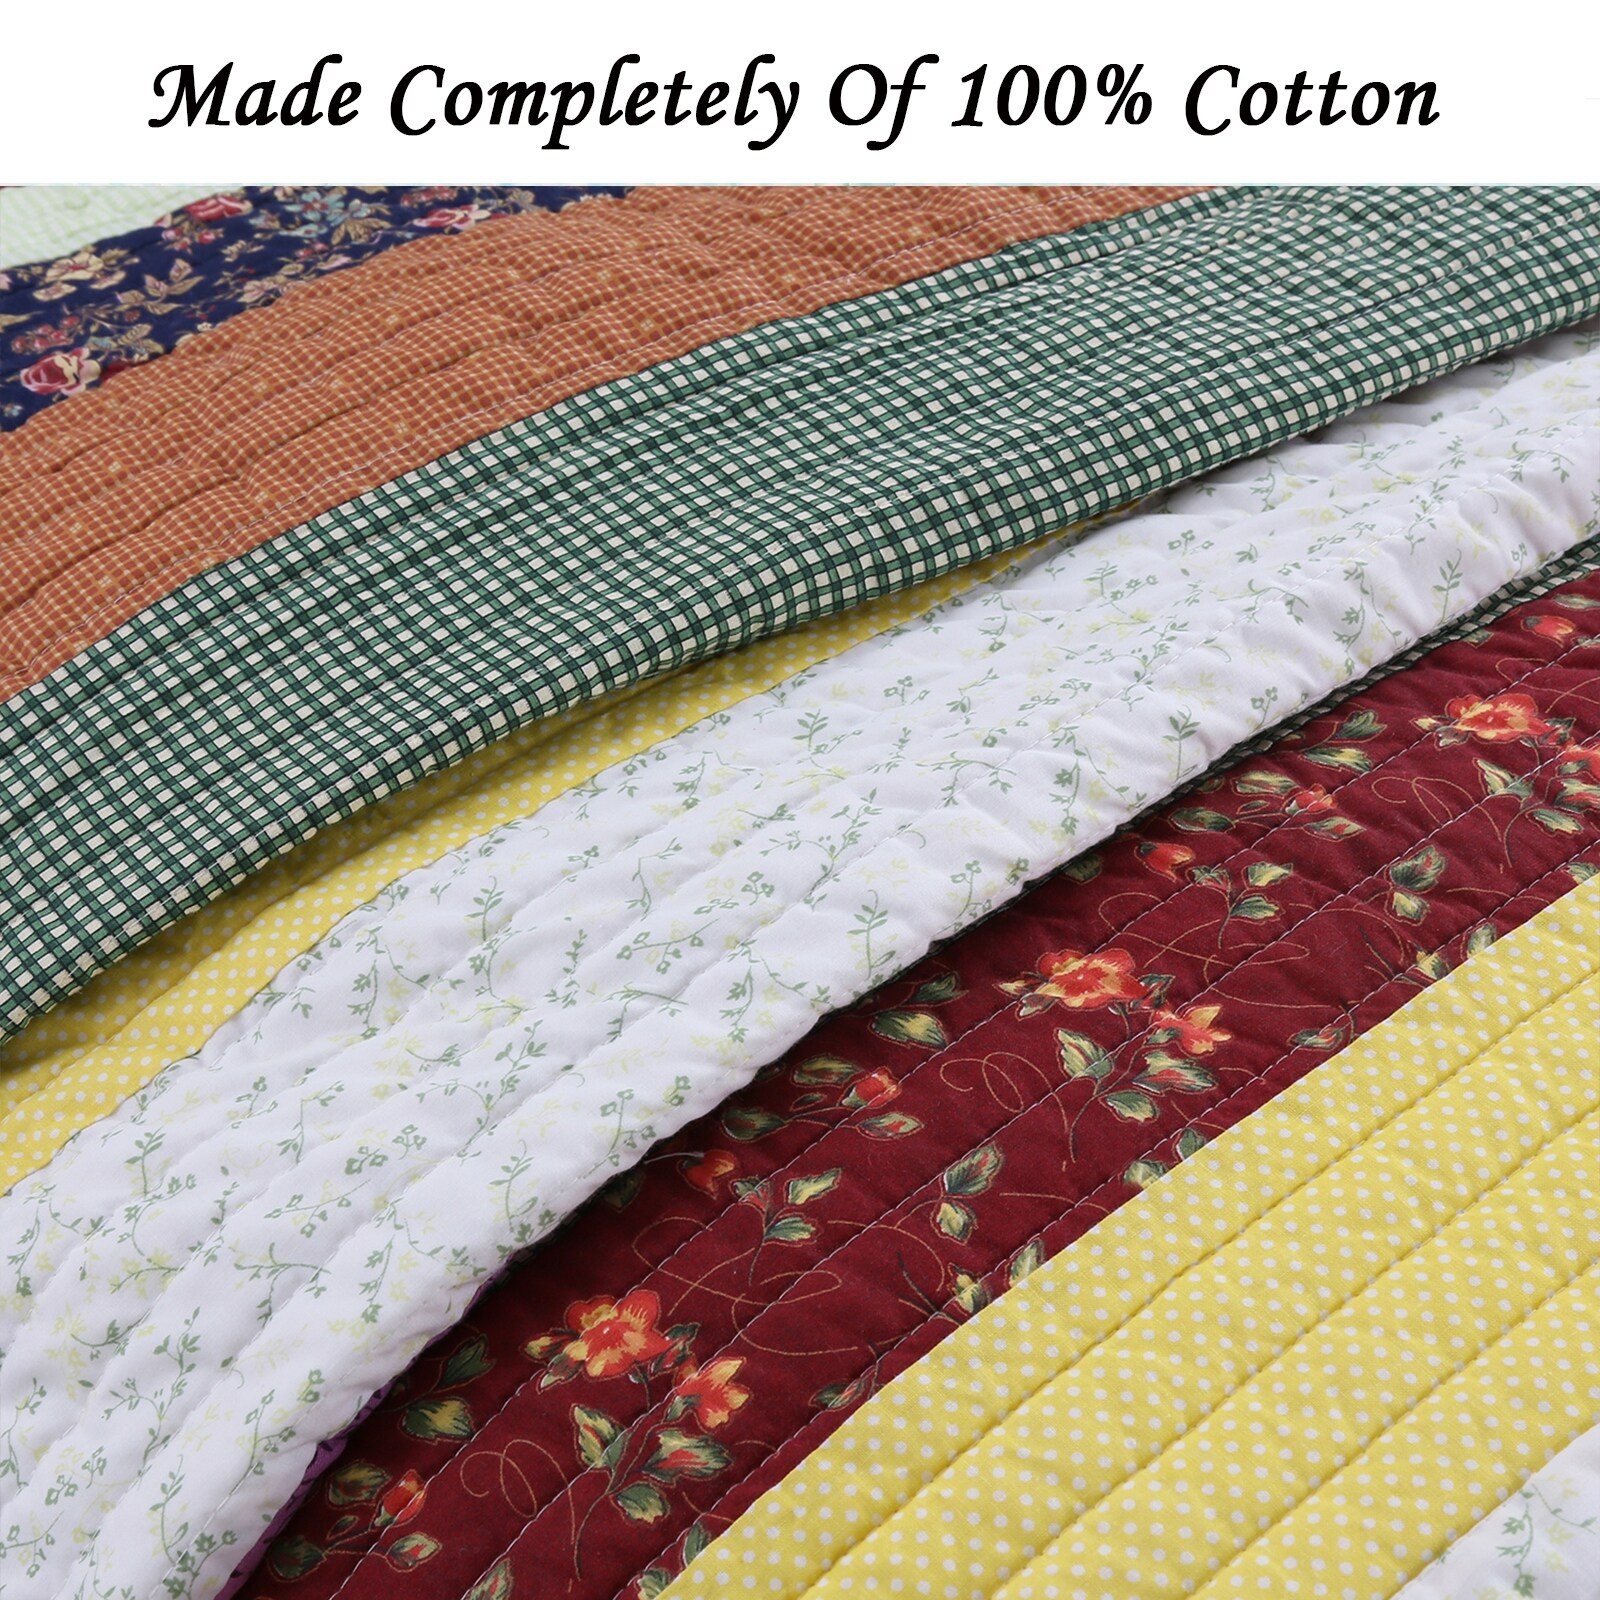 Coverlet Sagamore Striped 100%Cotton 3-Piece Quilt Set Bedspread 